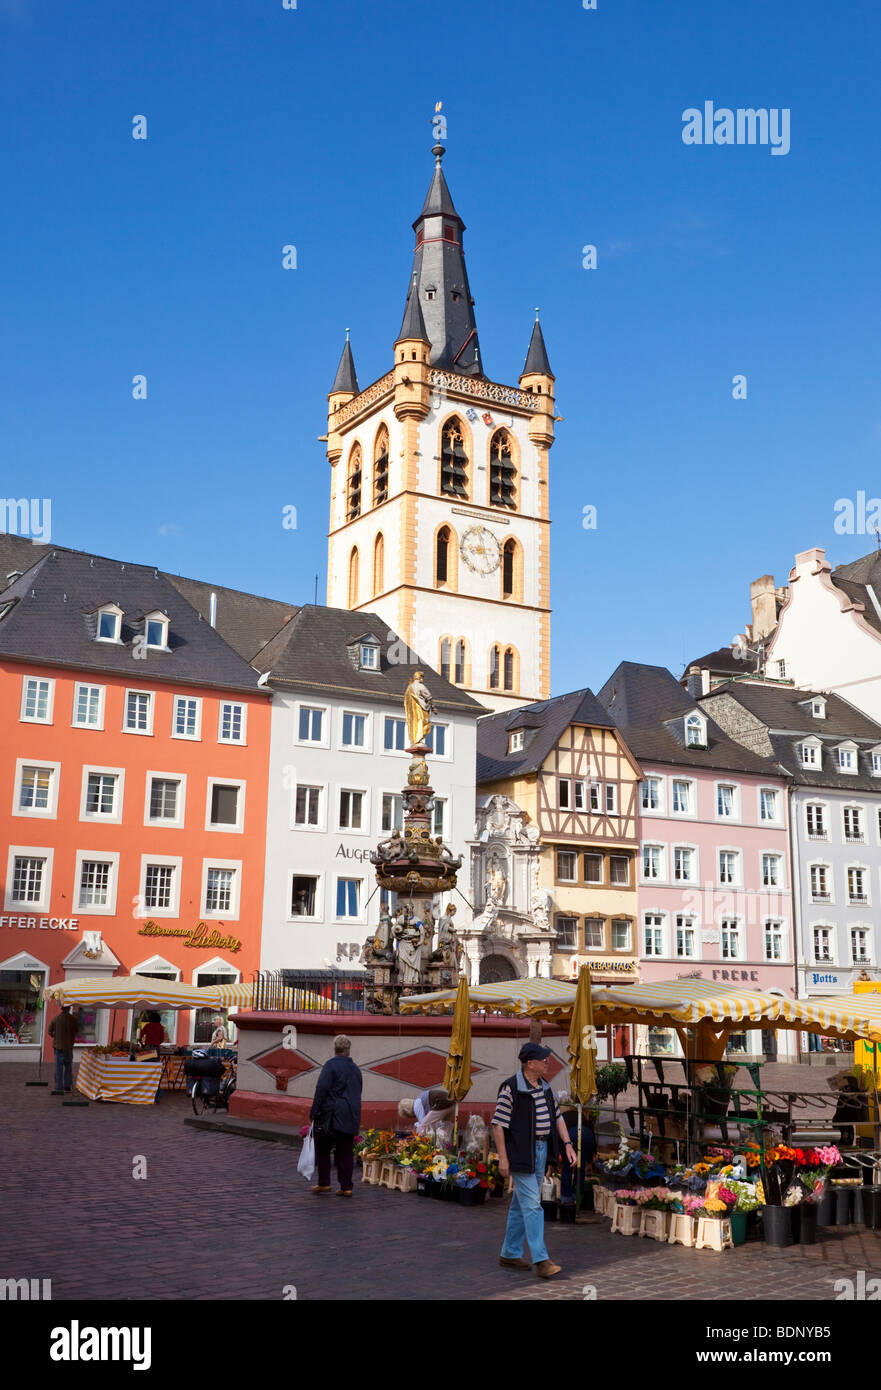 Trier, Germania, Europa - mercato nella storica piazza del mercato nel centro storico Foto Stock